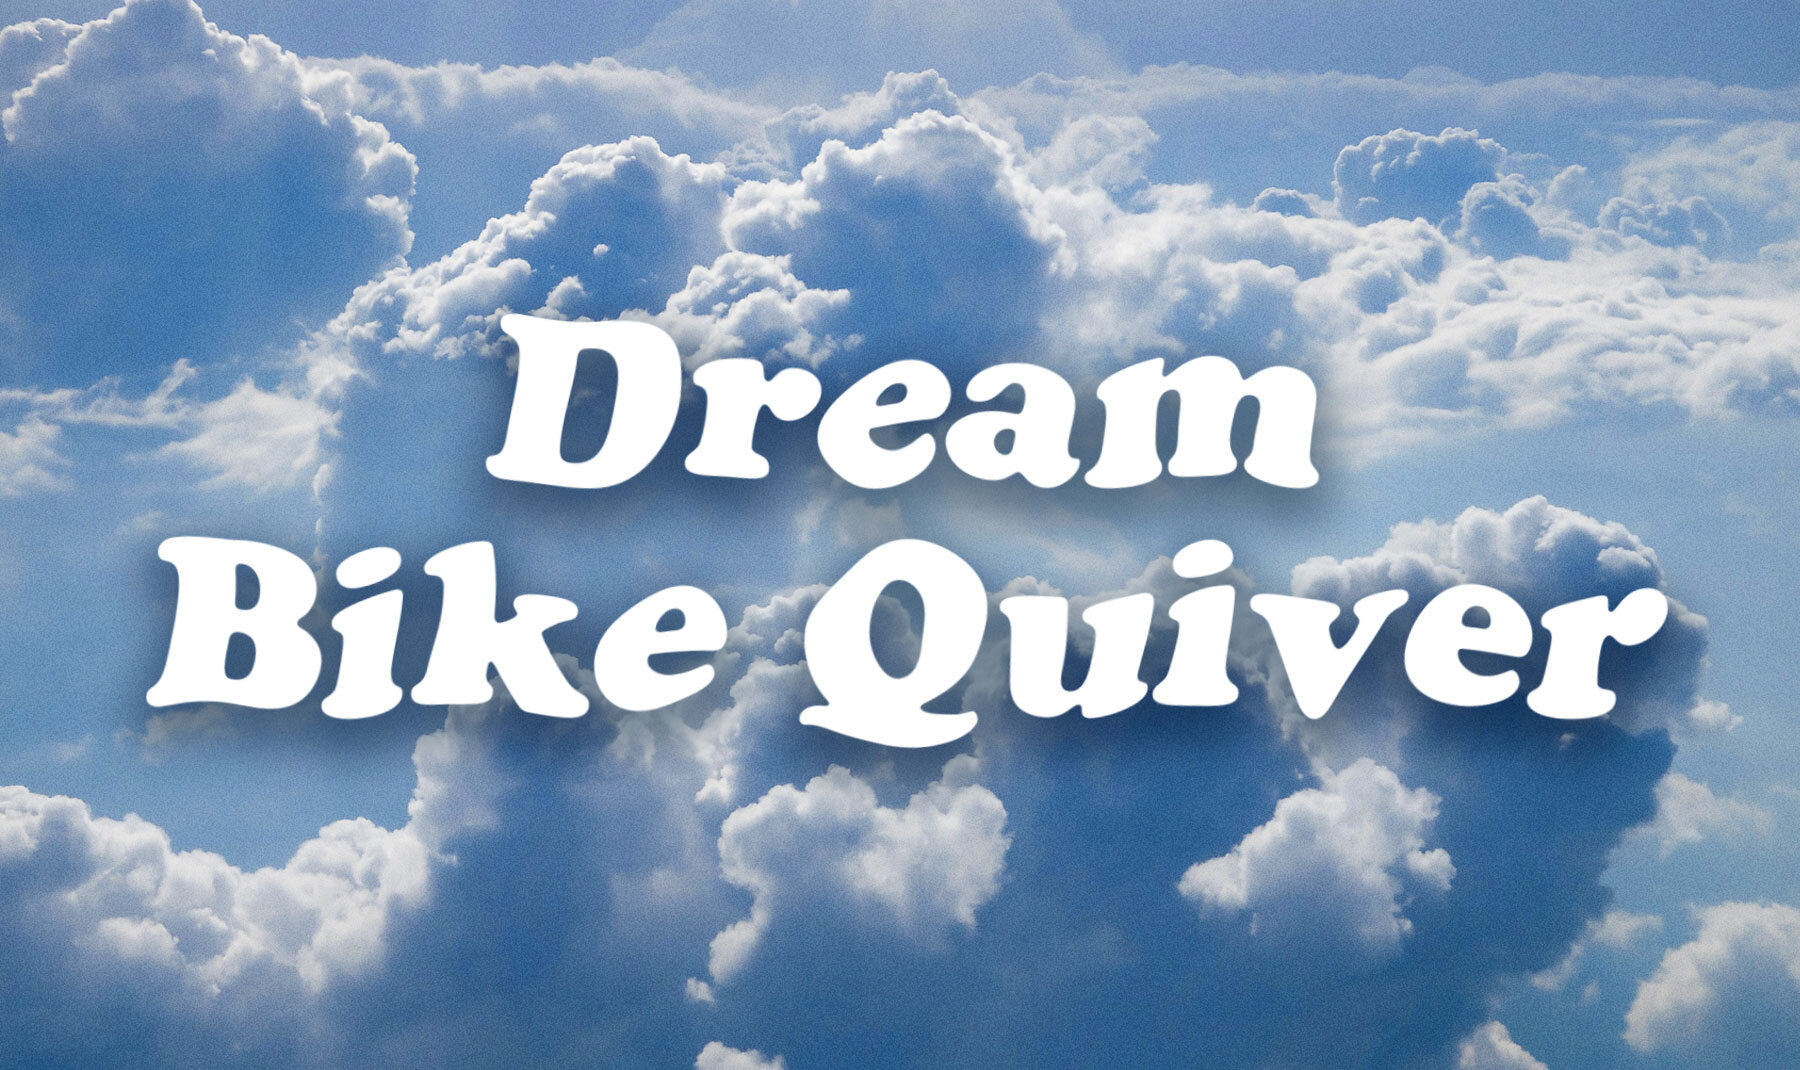 Dream bike quiver